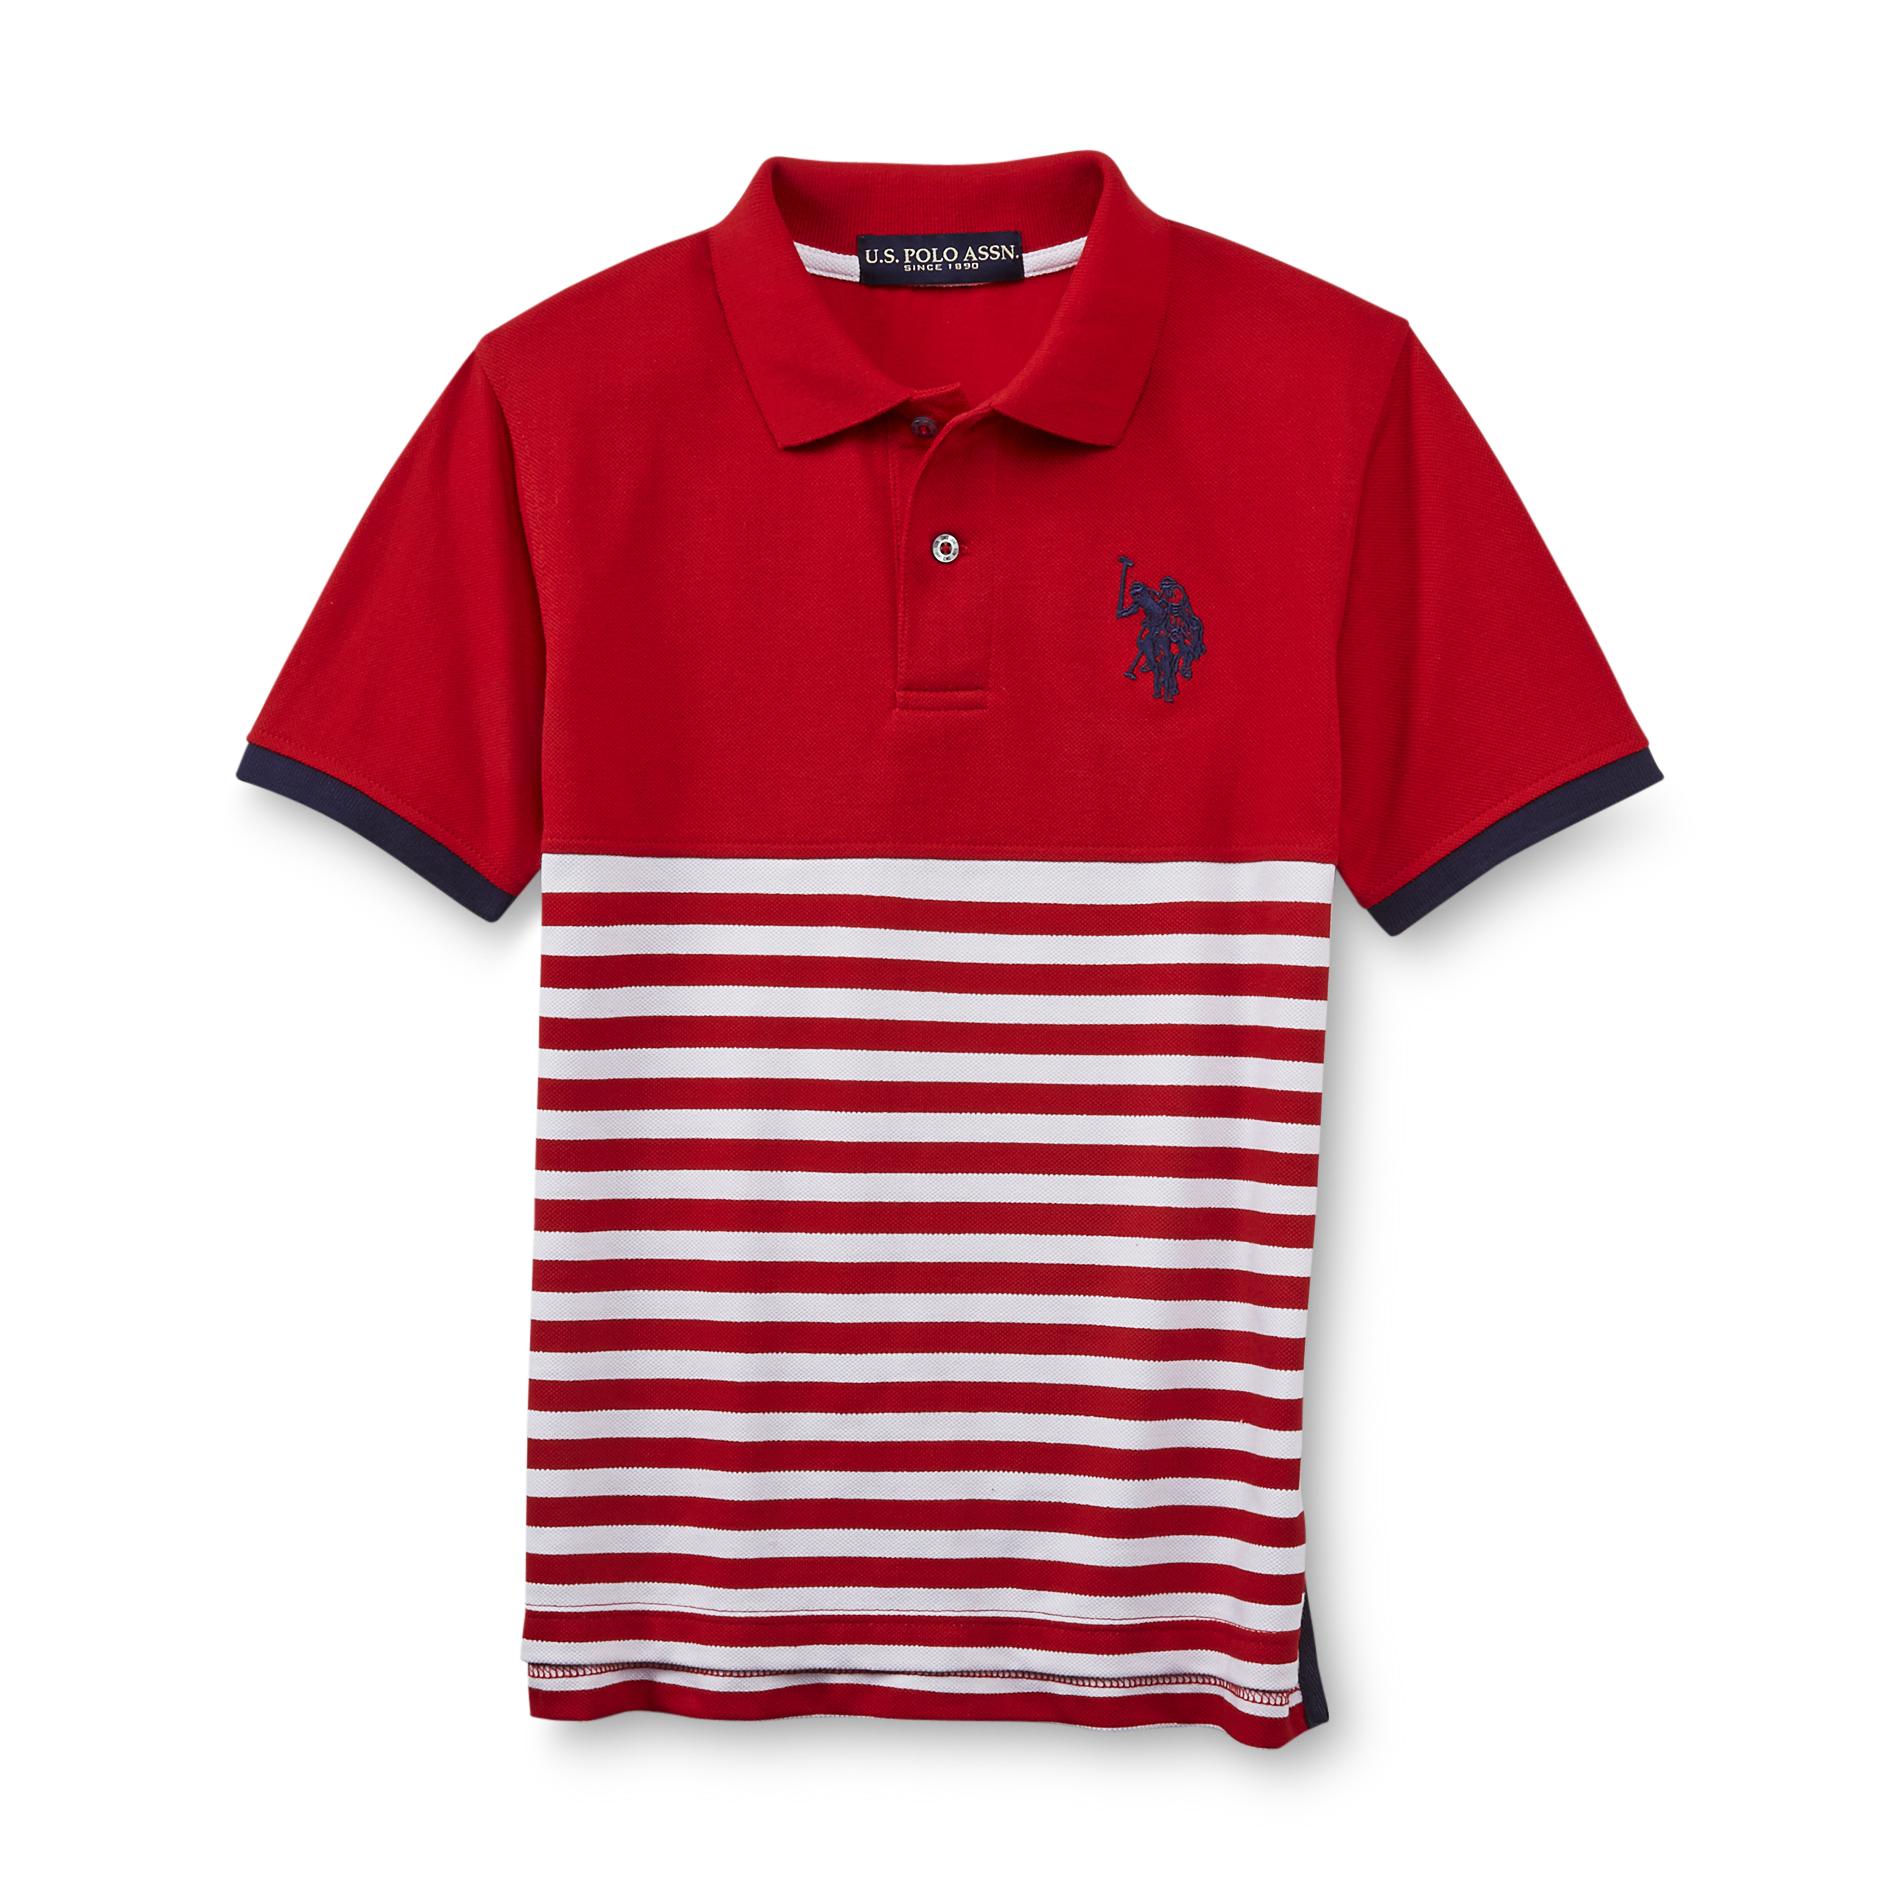 U.S. Polo Assn. Boy's Pique Knit Polo Shirt - Striped